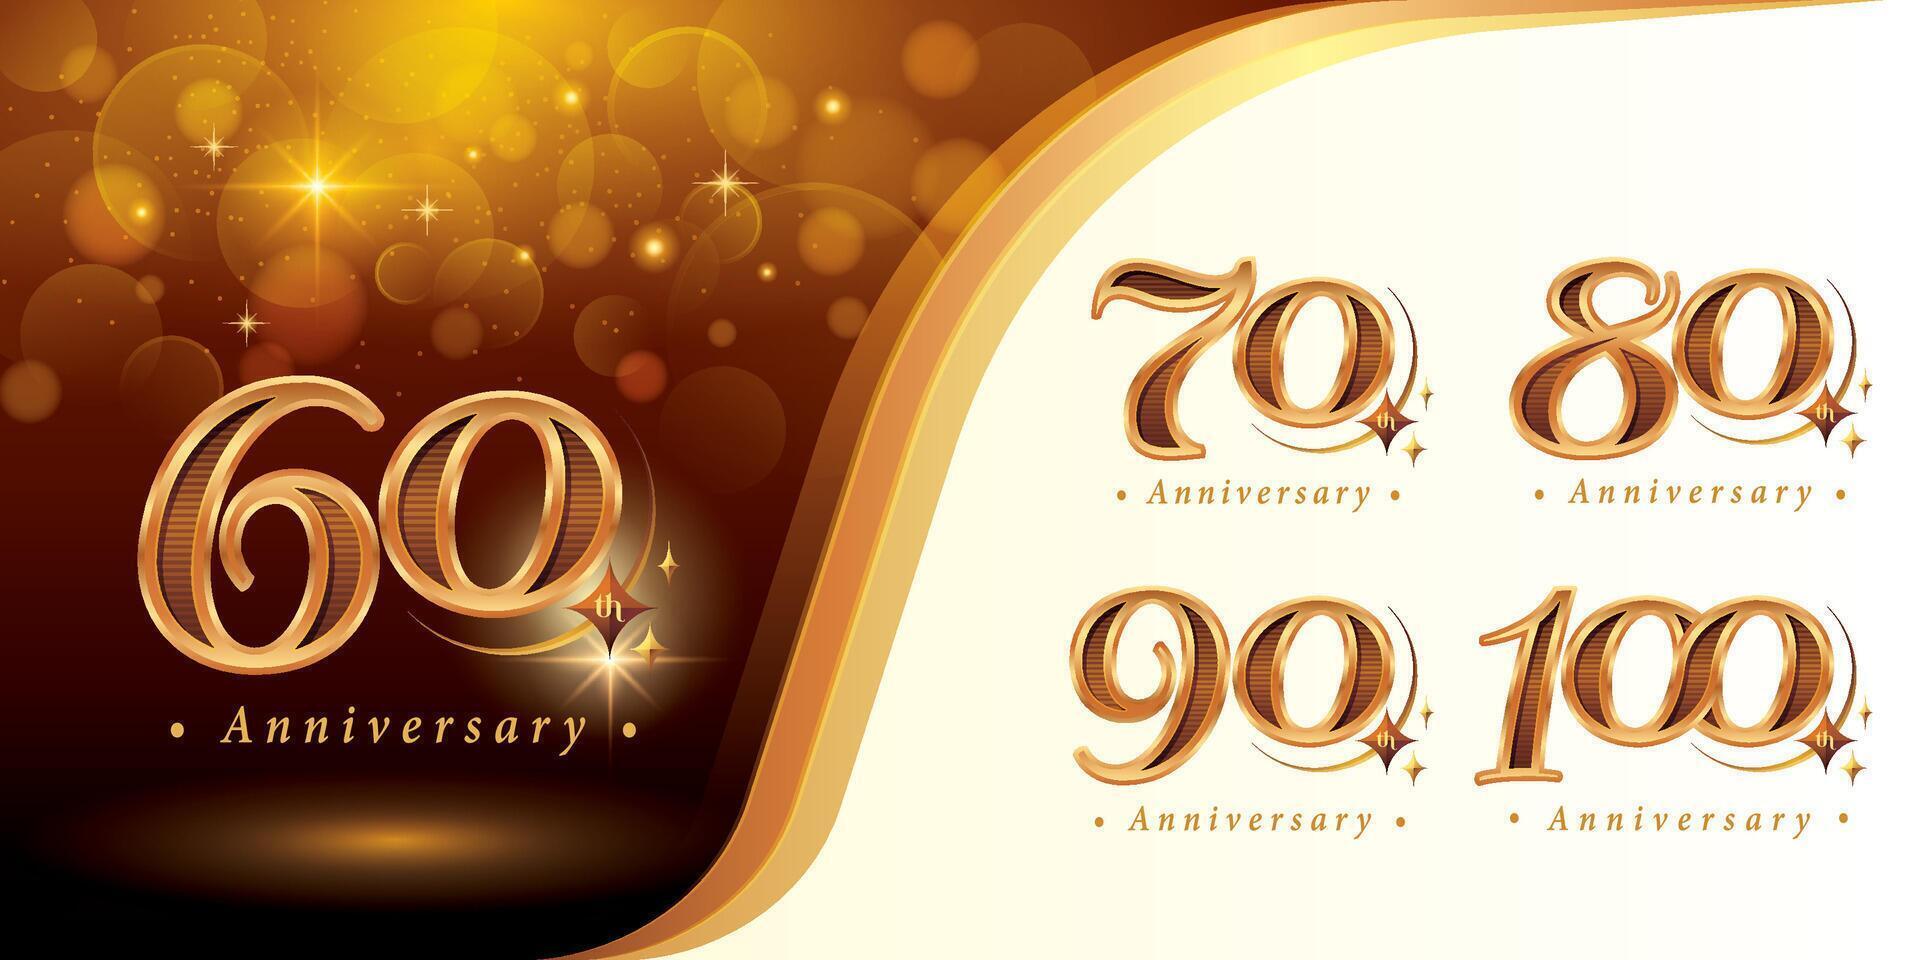 einstellen von 60 zu 100 Jahre Jahrestag Logo Design, sechzig zu hundert Jahre feiern Jahrestag Logo, Luxus golden elegant klassisch Logo mit Stern, vektor